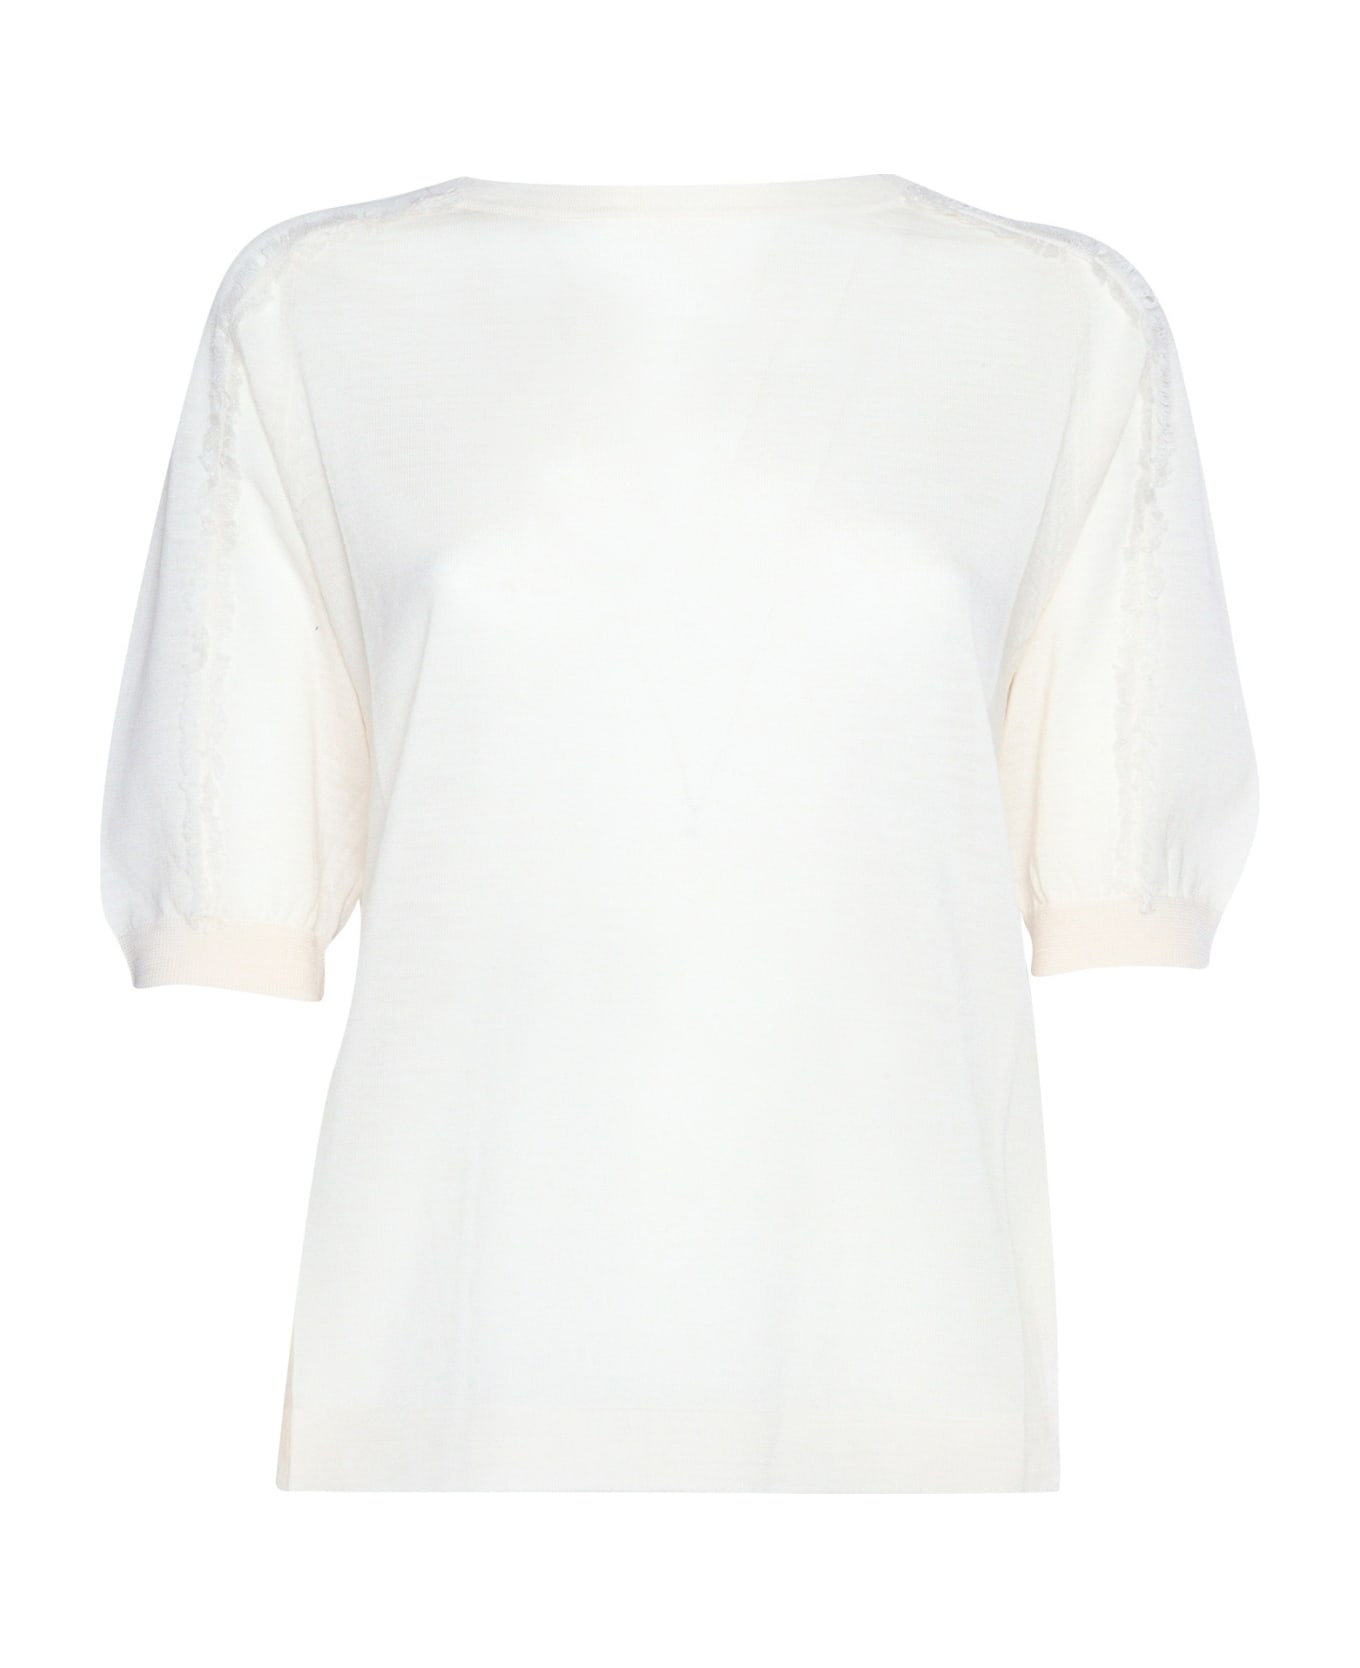 Ballantyne White Short Sleeved Sweater - WHITE